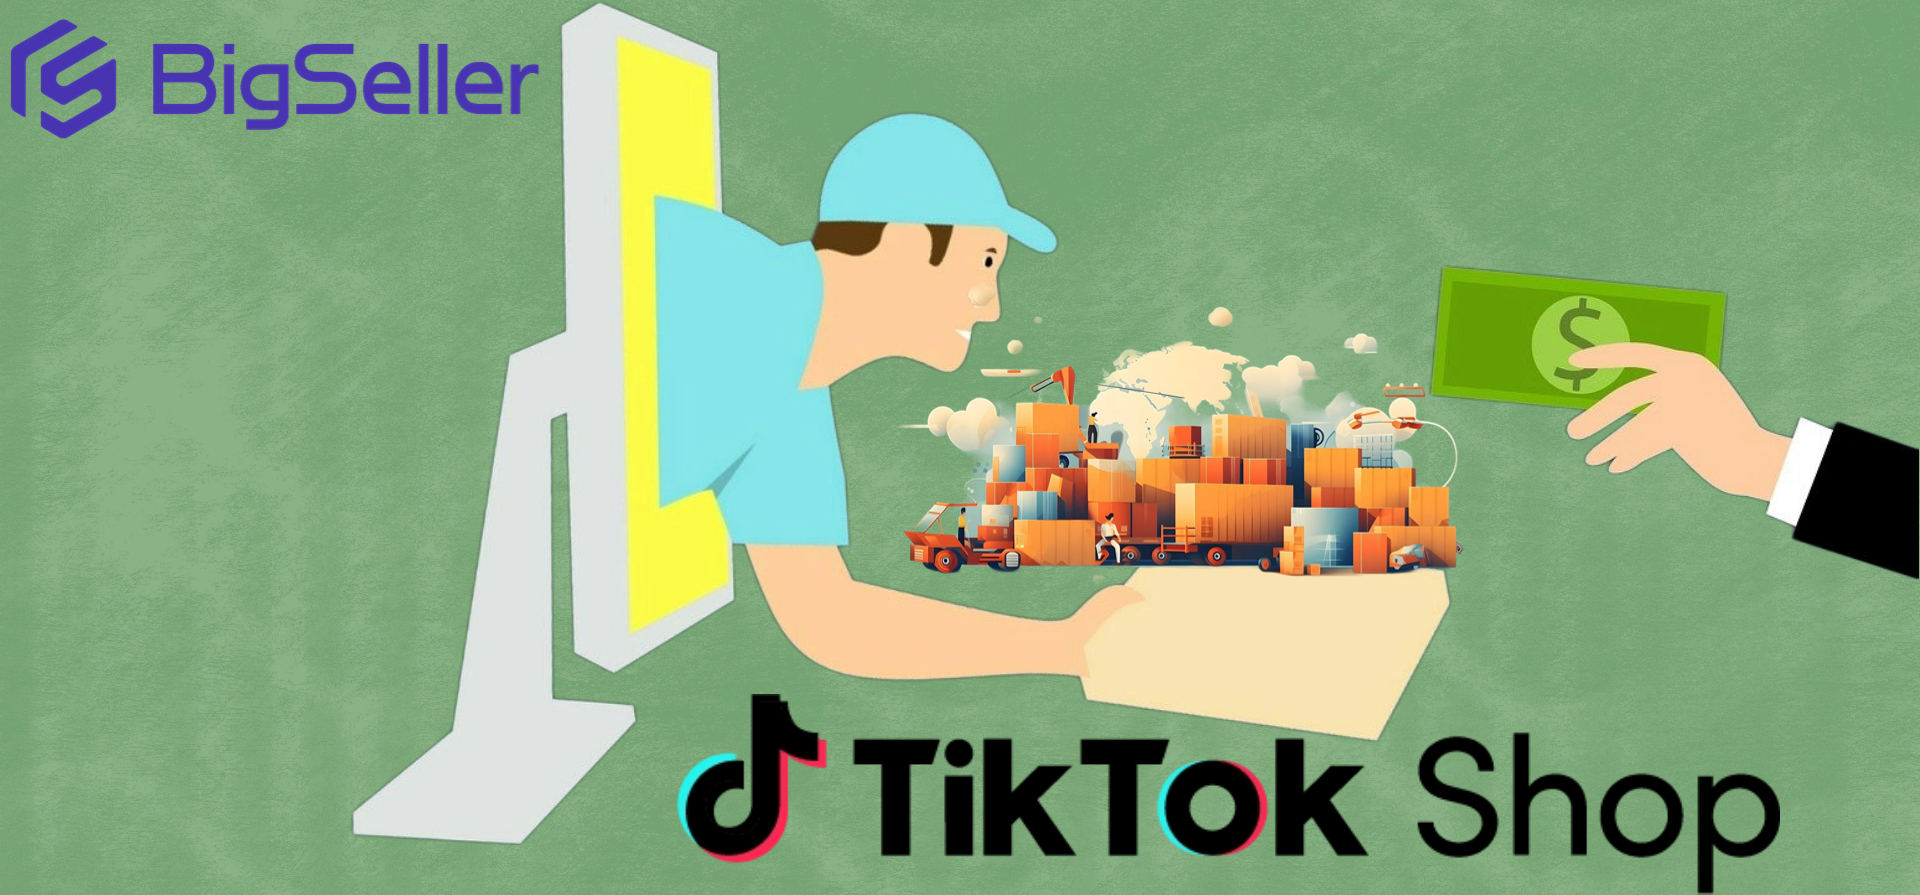 phần mềm quản lý đơn hàng TikTok Shop